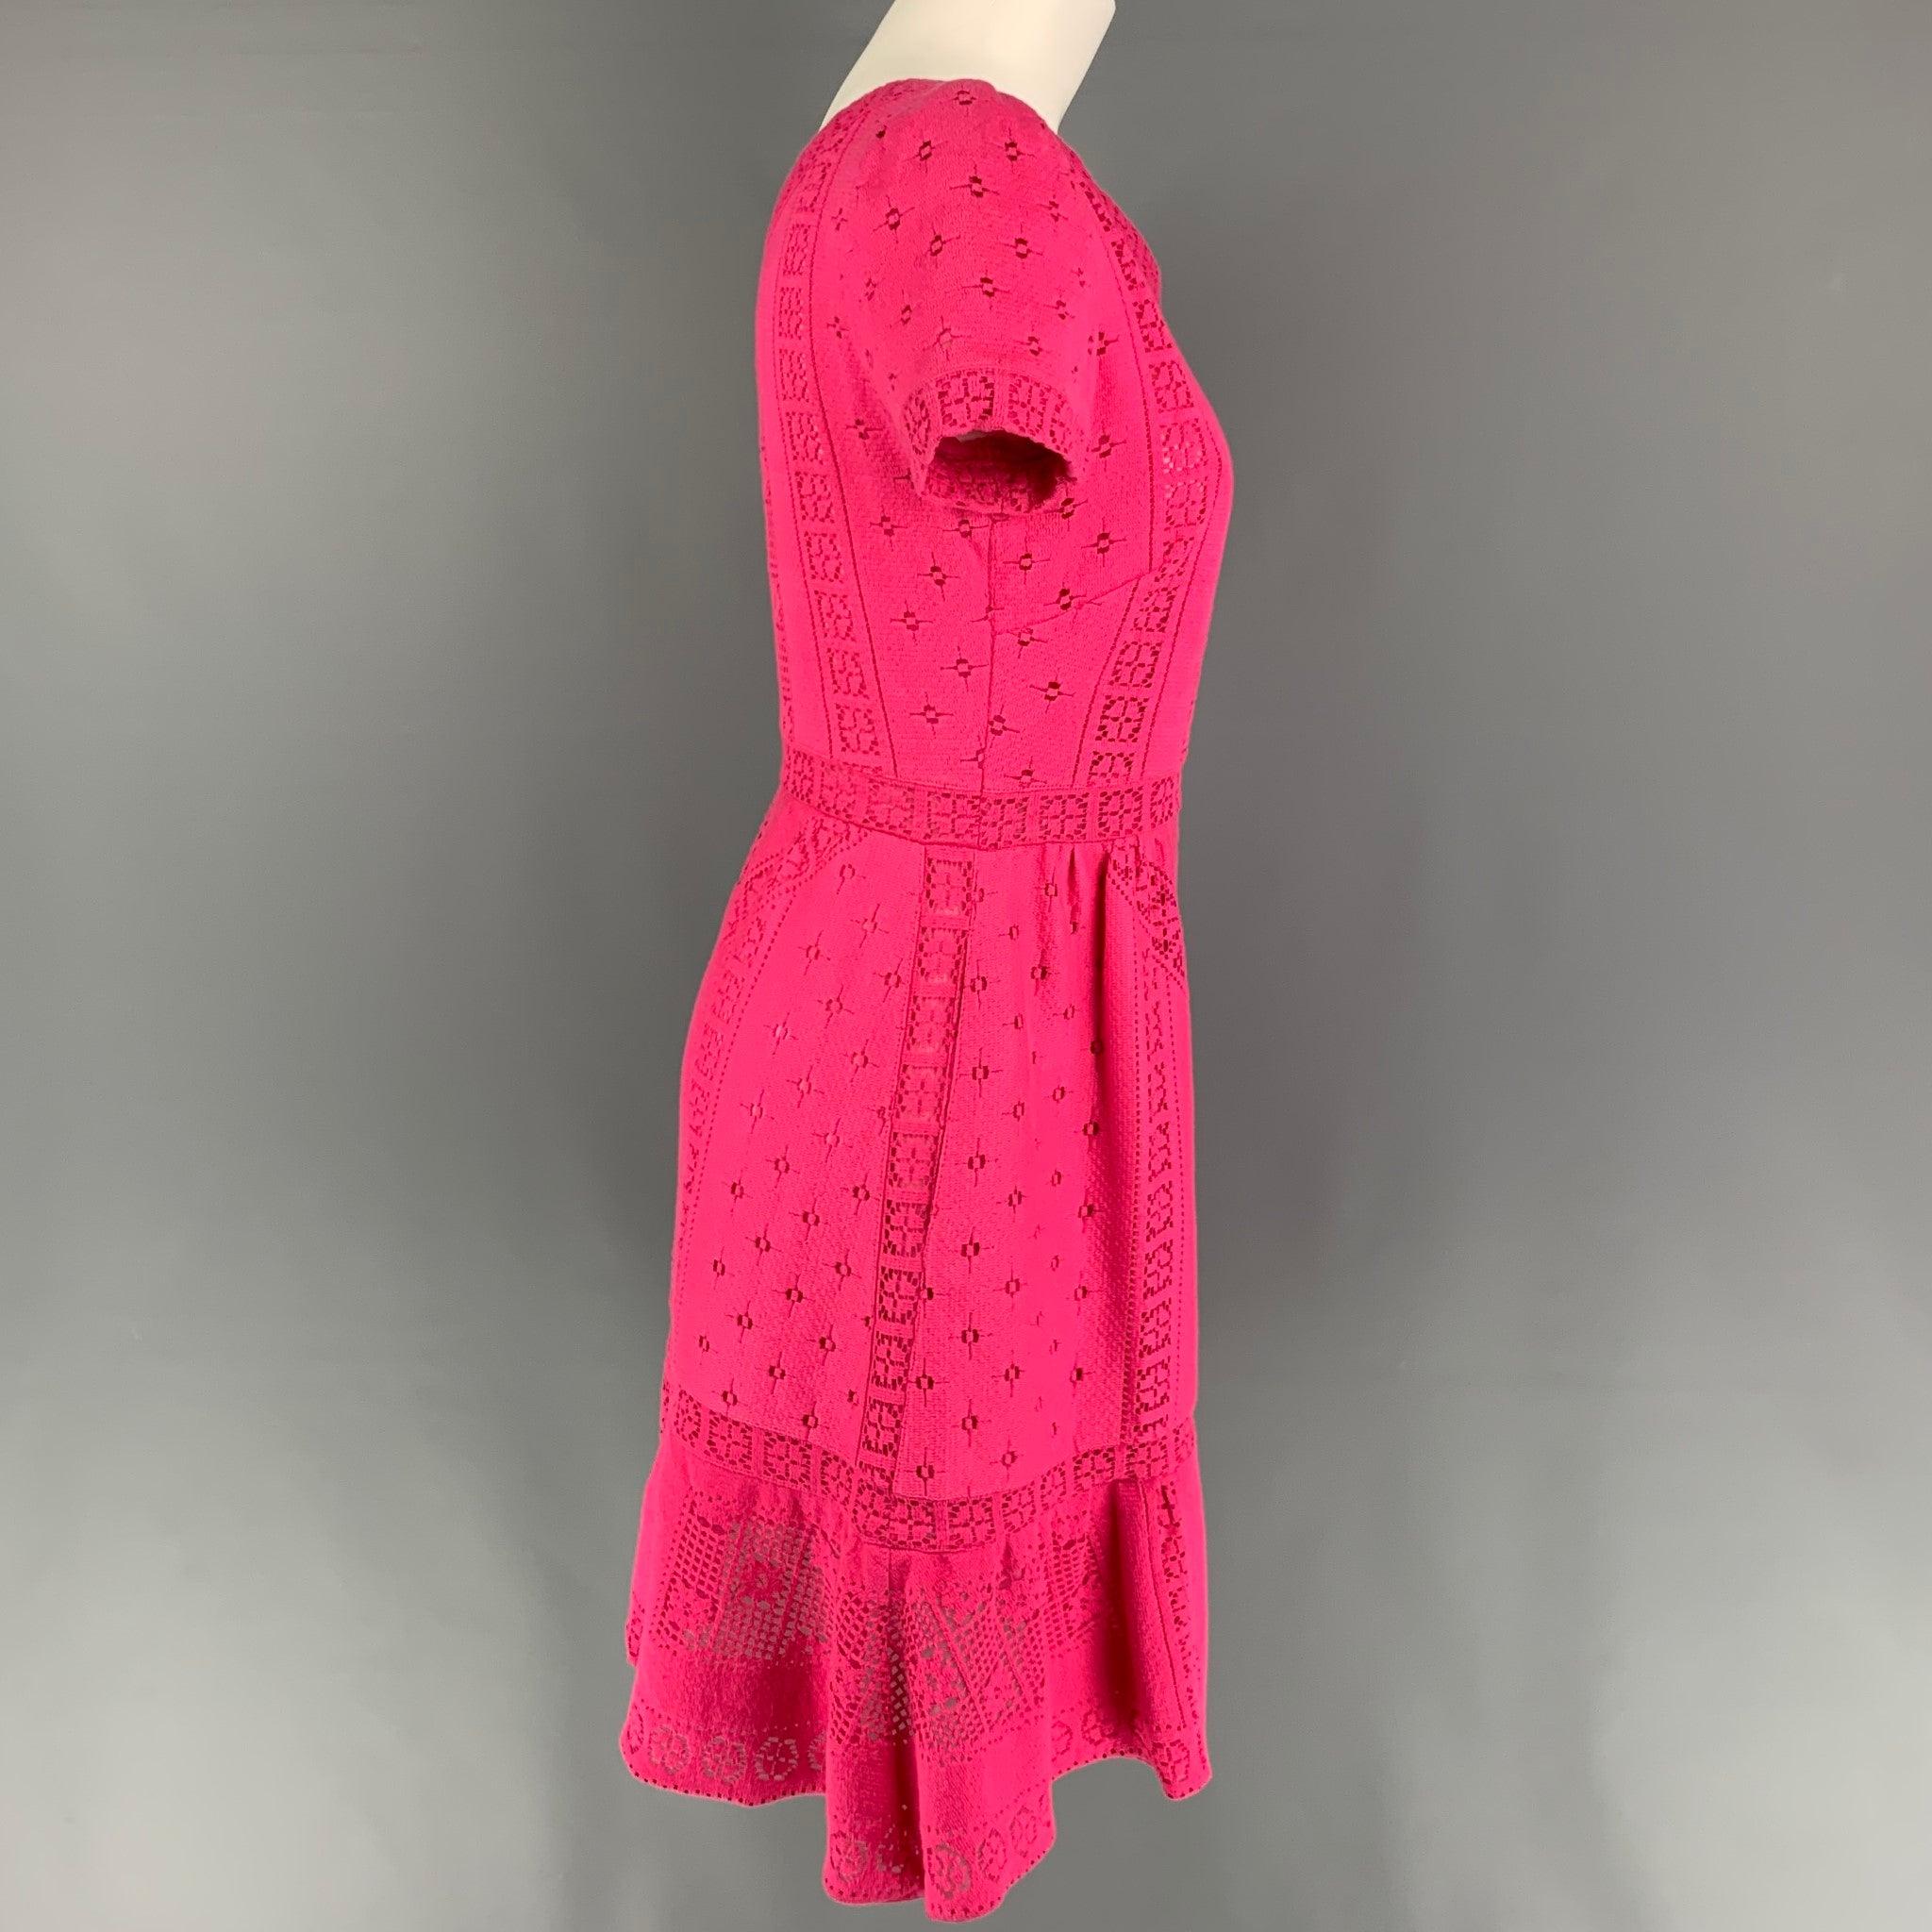 La robe VALENTINO se compose d'une dentelle rose en coton/nylon et d'une doublure en tissu. Elle présente un style a-line, des manches courtes, des poches fendues, une encolure en V et une fermeture à glissière sur le côté. Fait en Italie.
Très